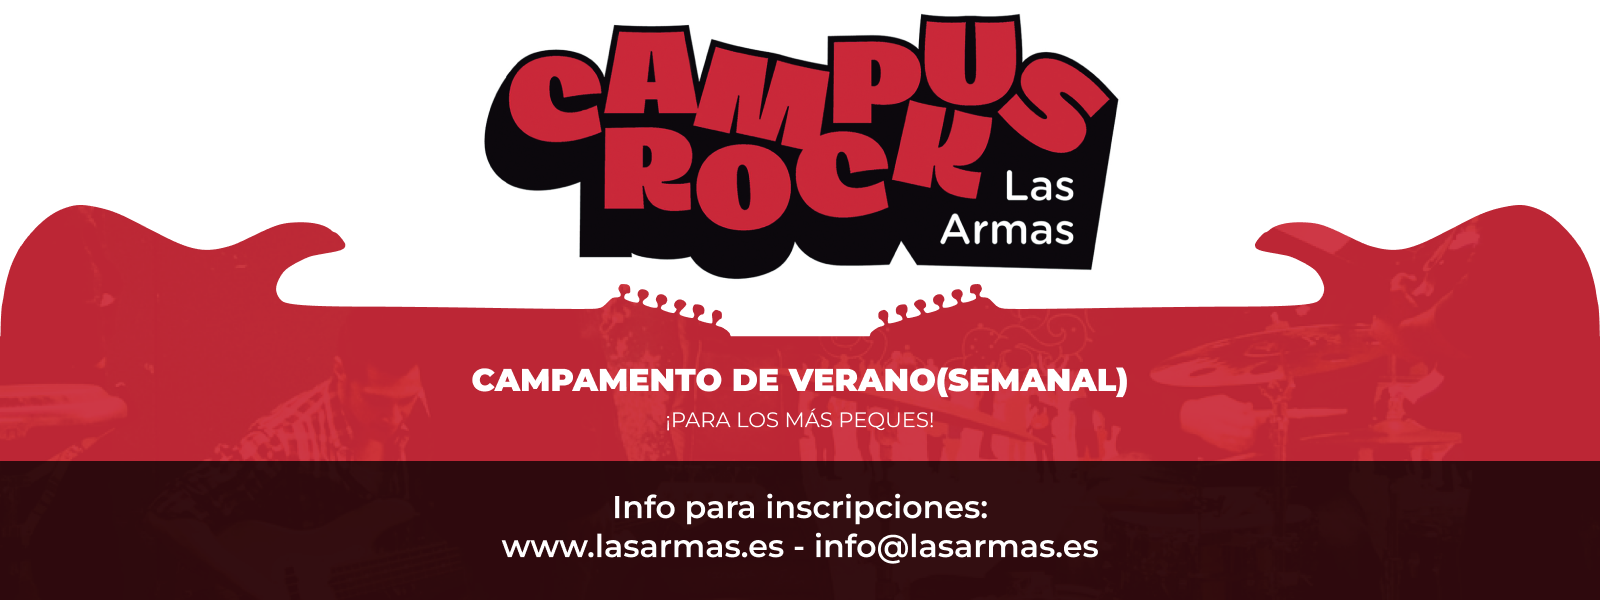 Campus Rock Las Armas